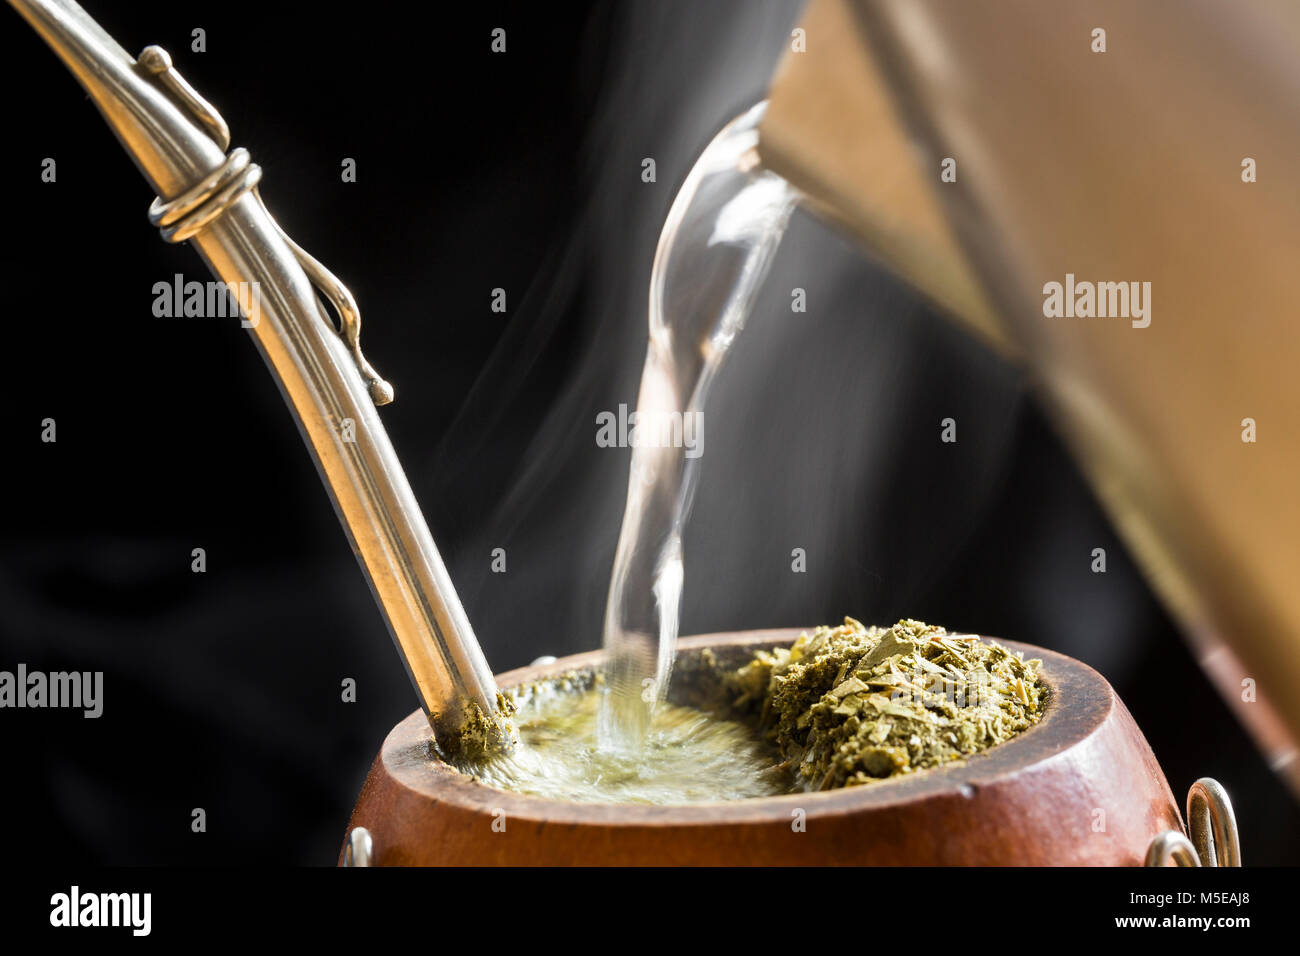 L'Amérique du Sud, Caffeine-Rich traditionnelle boisson infusée Mate (Yerba Mate) dans une calebasse Gourd. L'eau sert à la vapeur électrique en infusion Mate. Banque D'Images